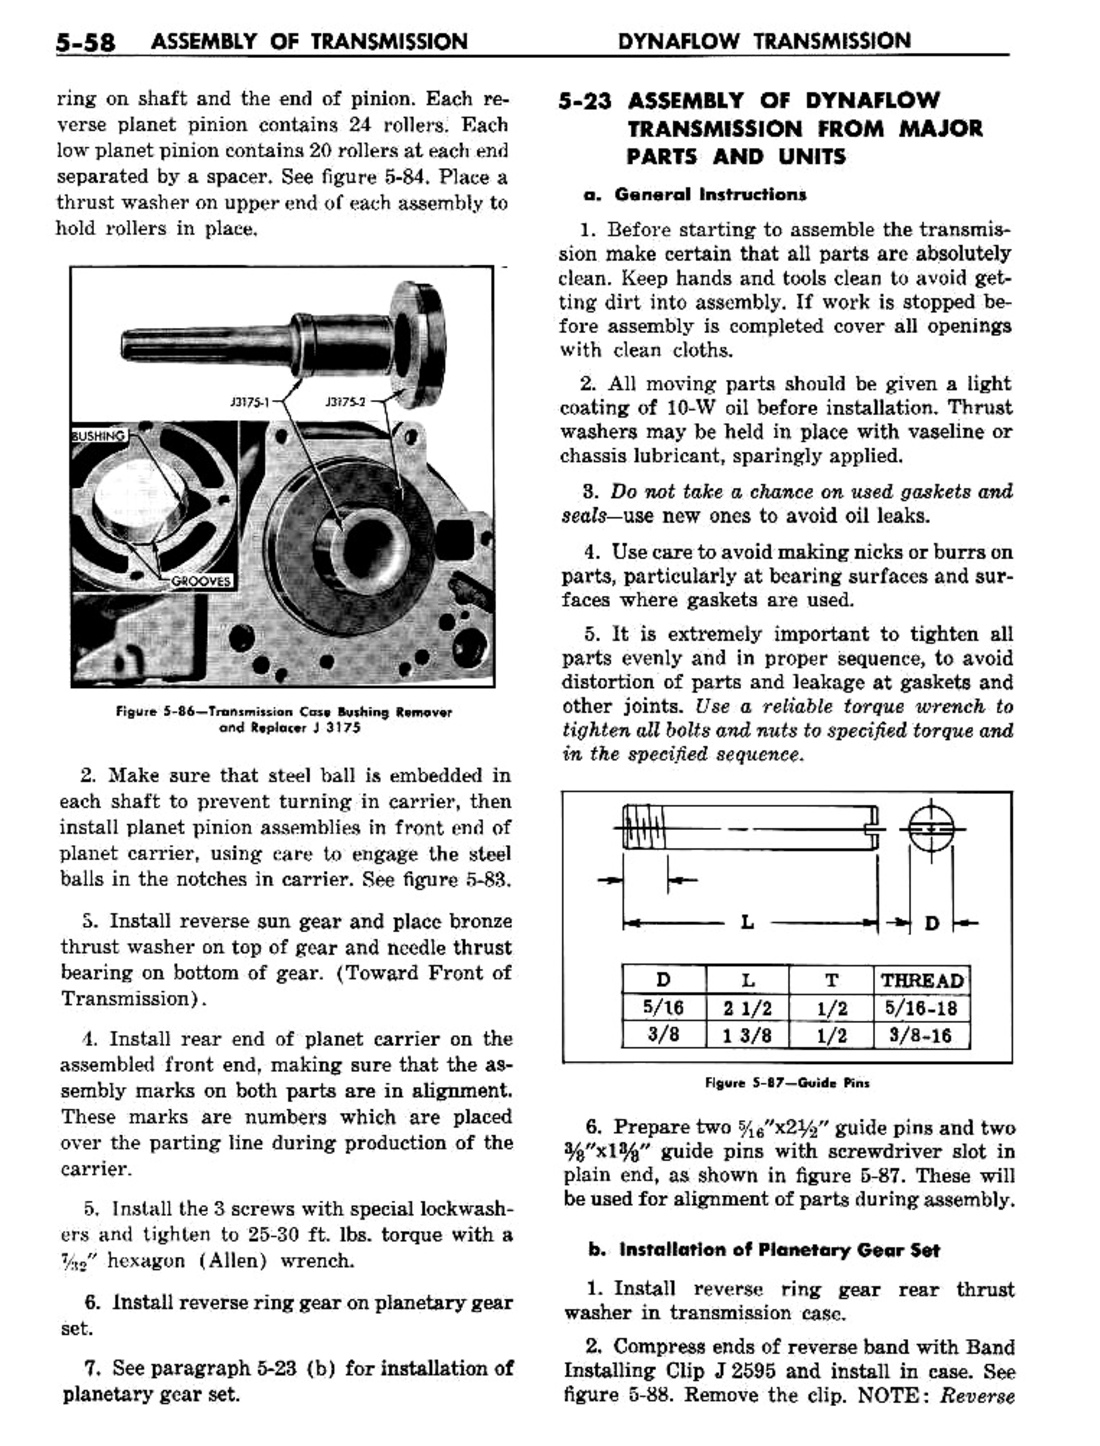 n_06 1957 Buick Shop Manual - Dynaflow-058-058.jpg